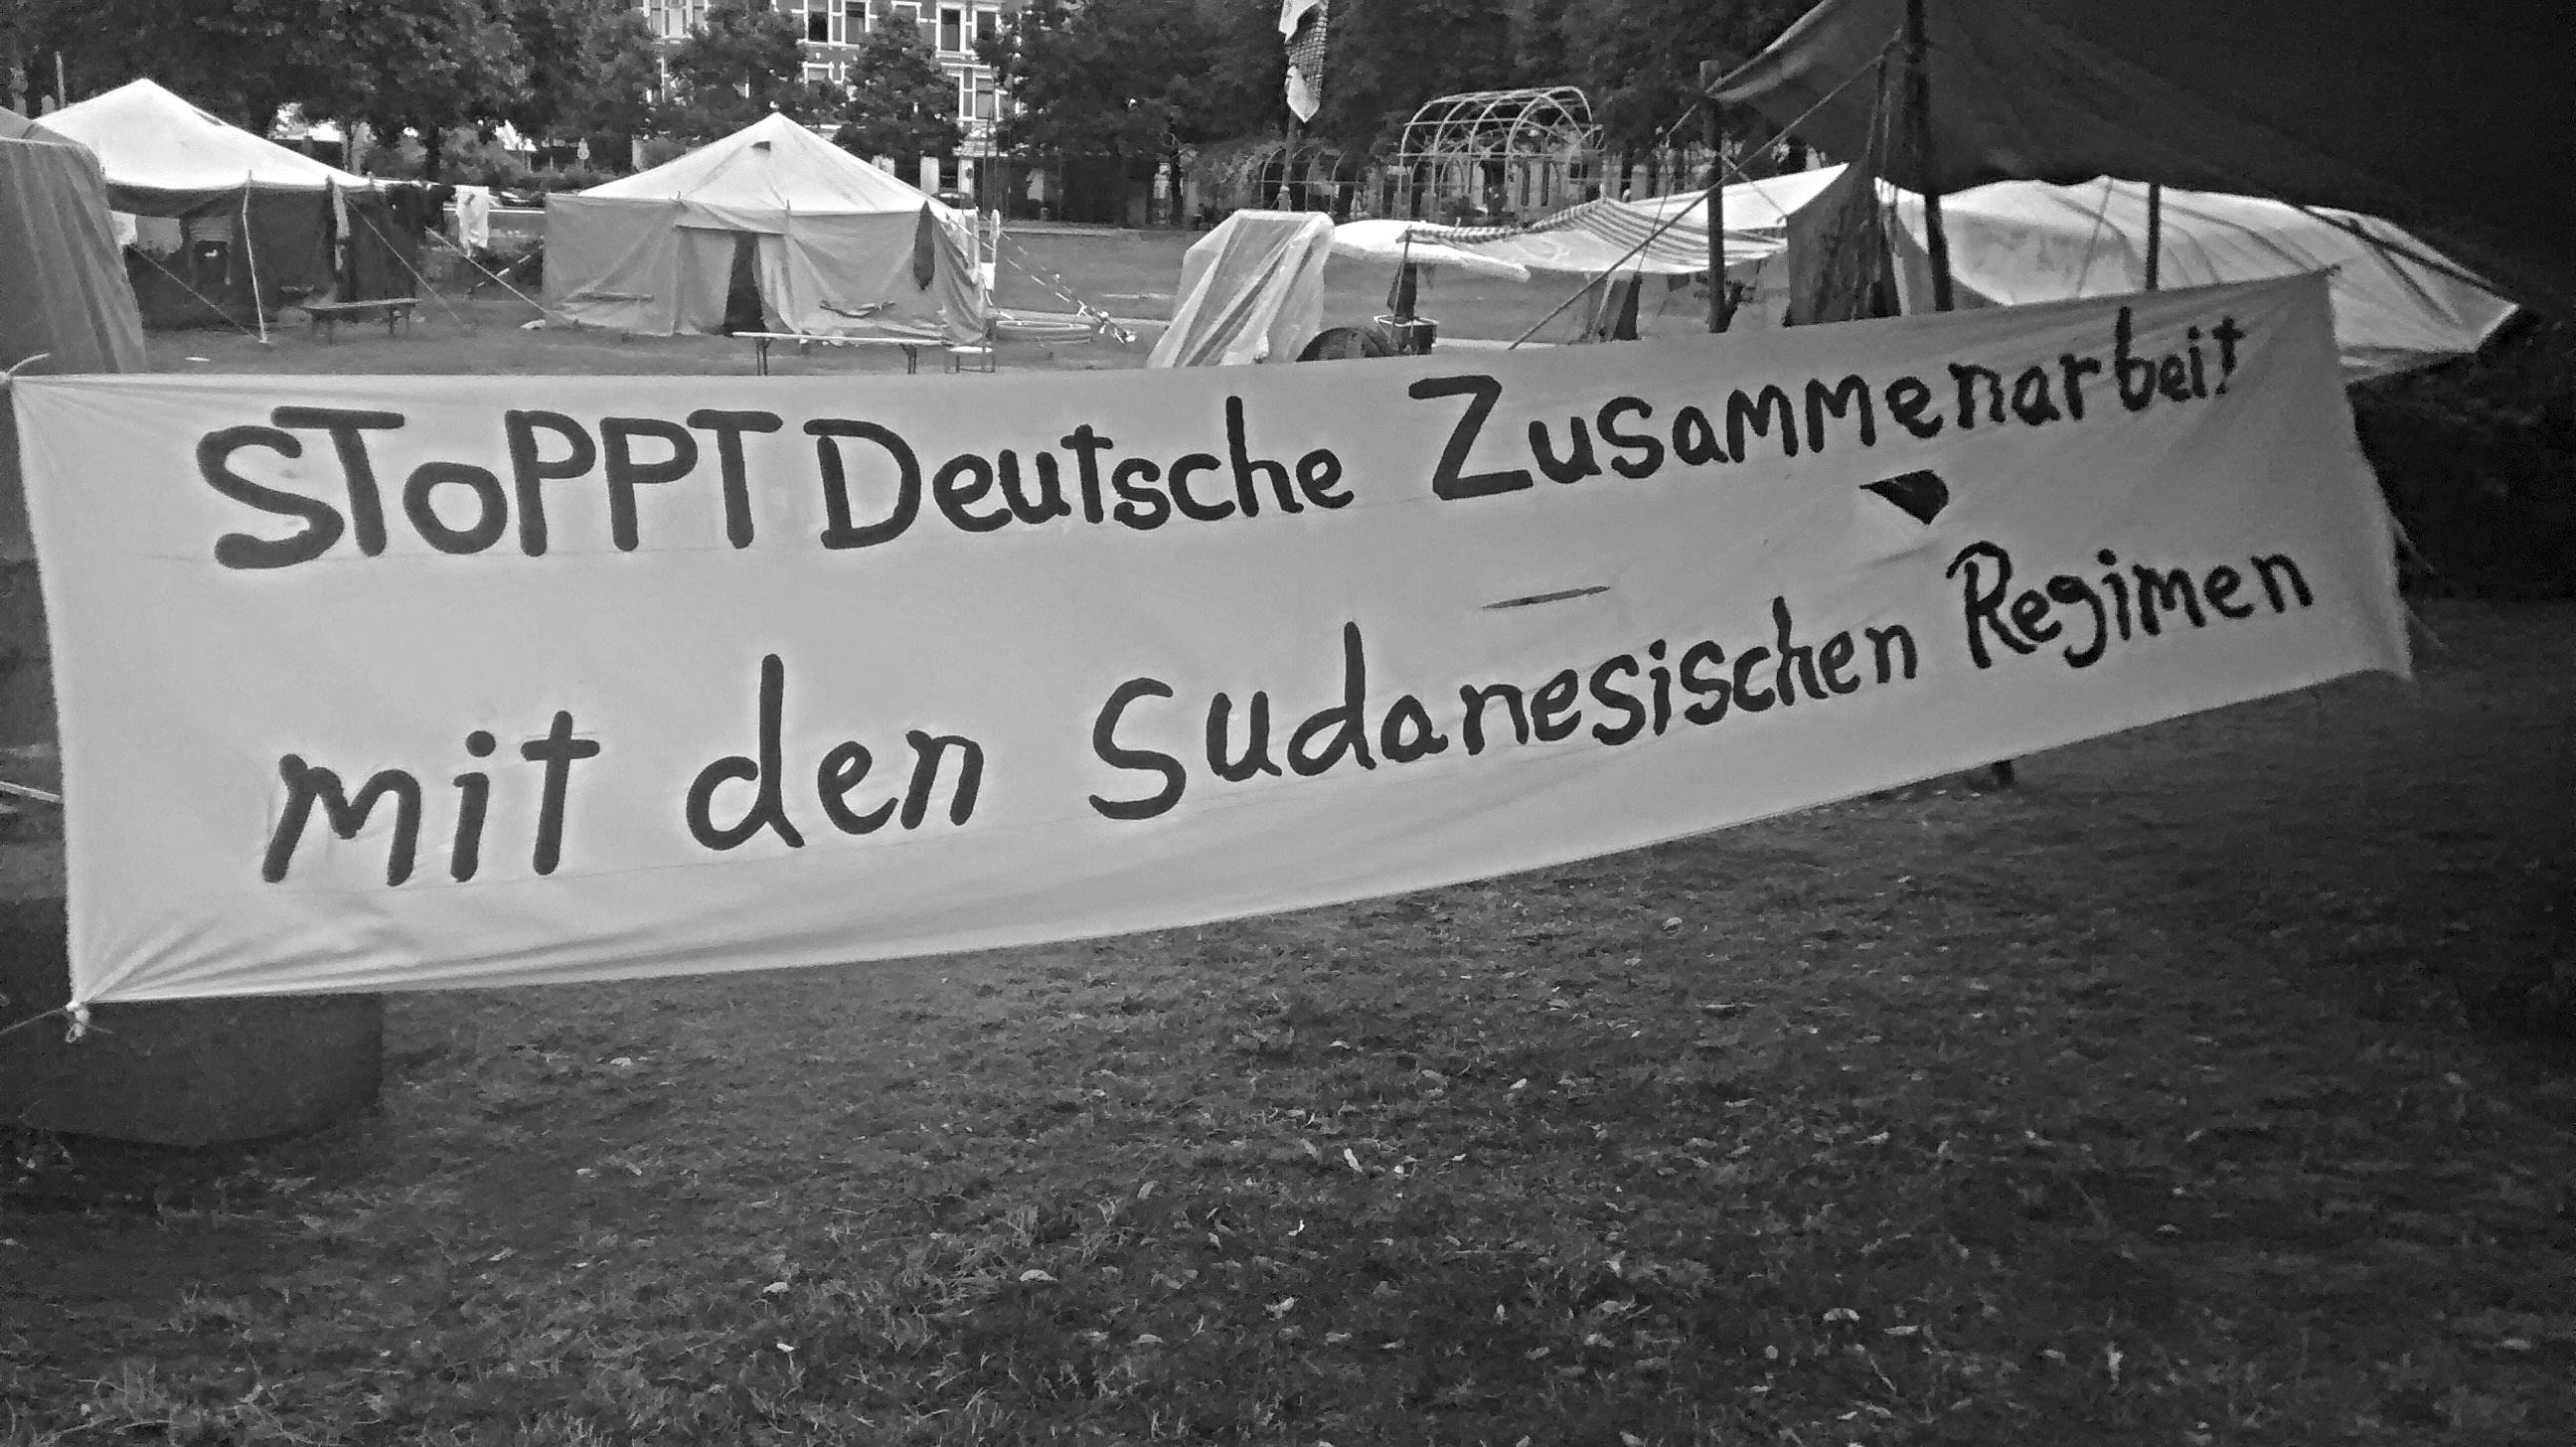 Sind durch die deutsche Diplomatie in ihrem Leben bedroht: Sudanesische Flüchtlinge auf dem Refugee Protest Camp Hannover. Weitere Informationen über das Camp auf ageeb1999.wordpress.com